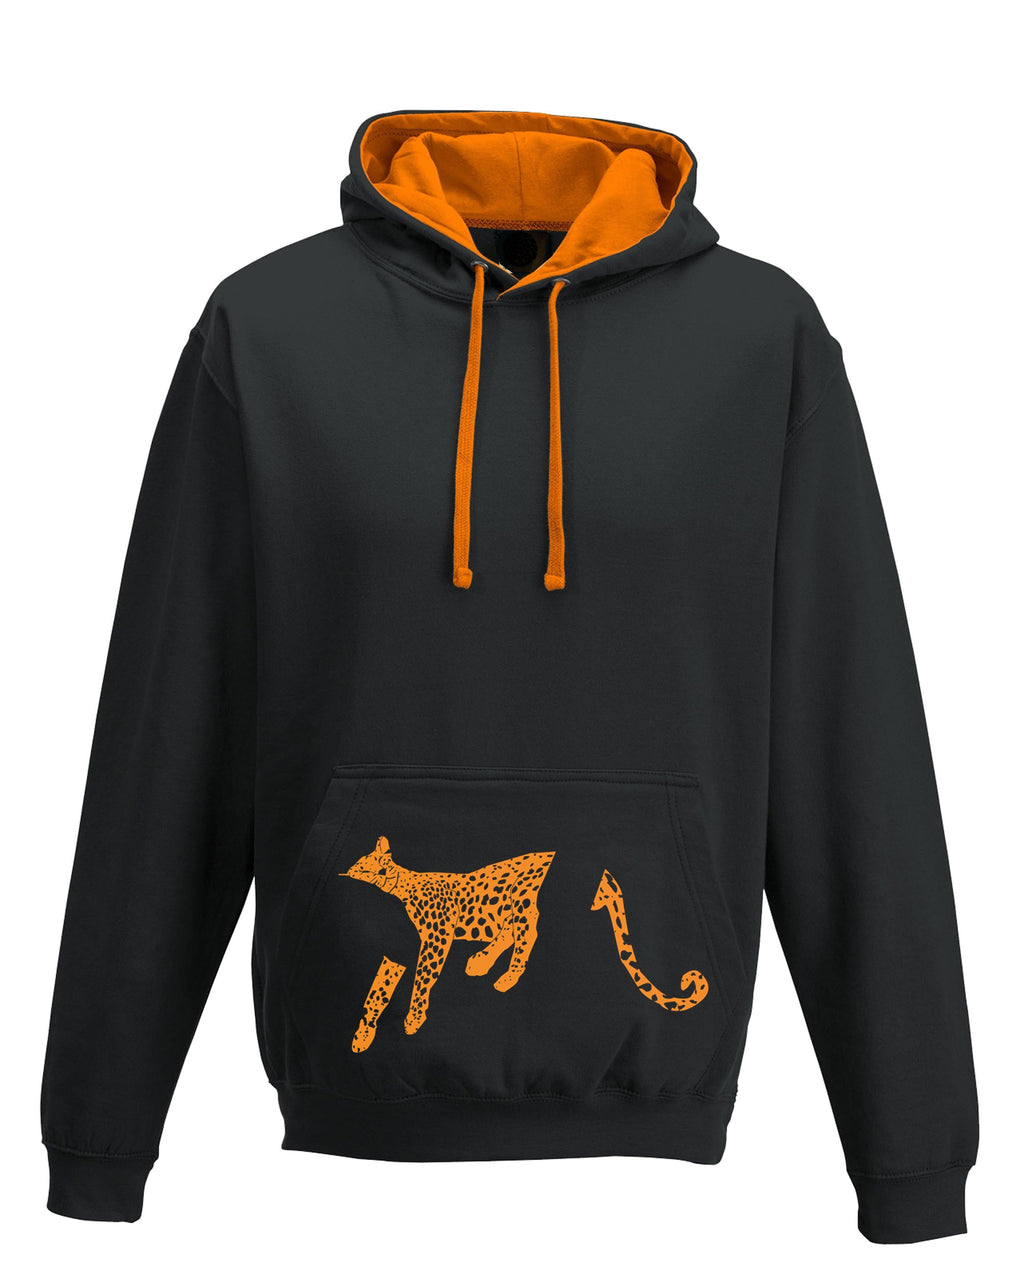 Hoodie - Leopard Hoodie, Black/orange